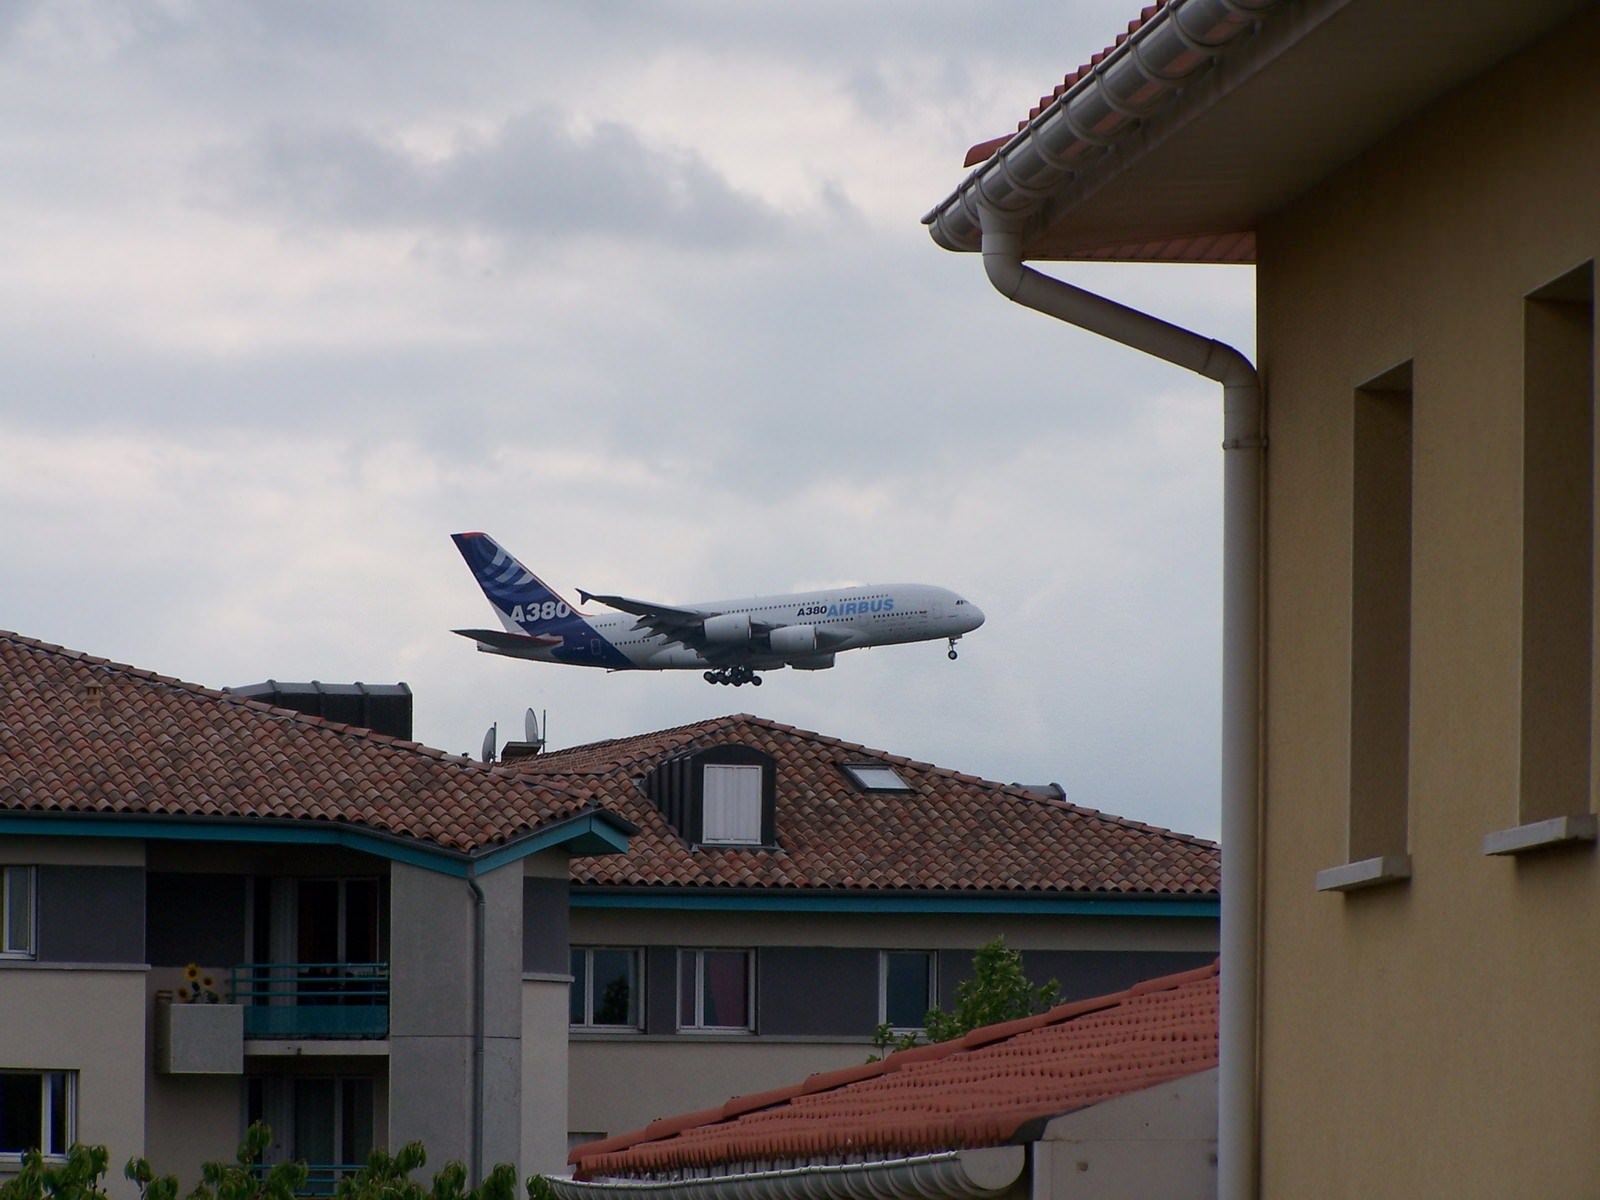 Avions de ligne A380 - Blagnac